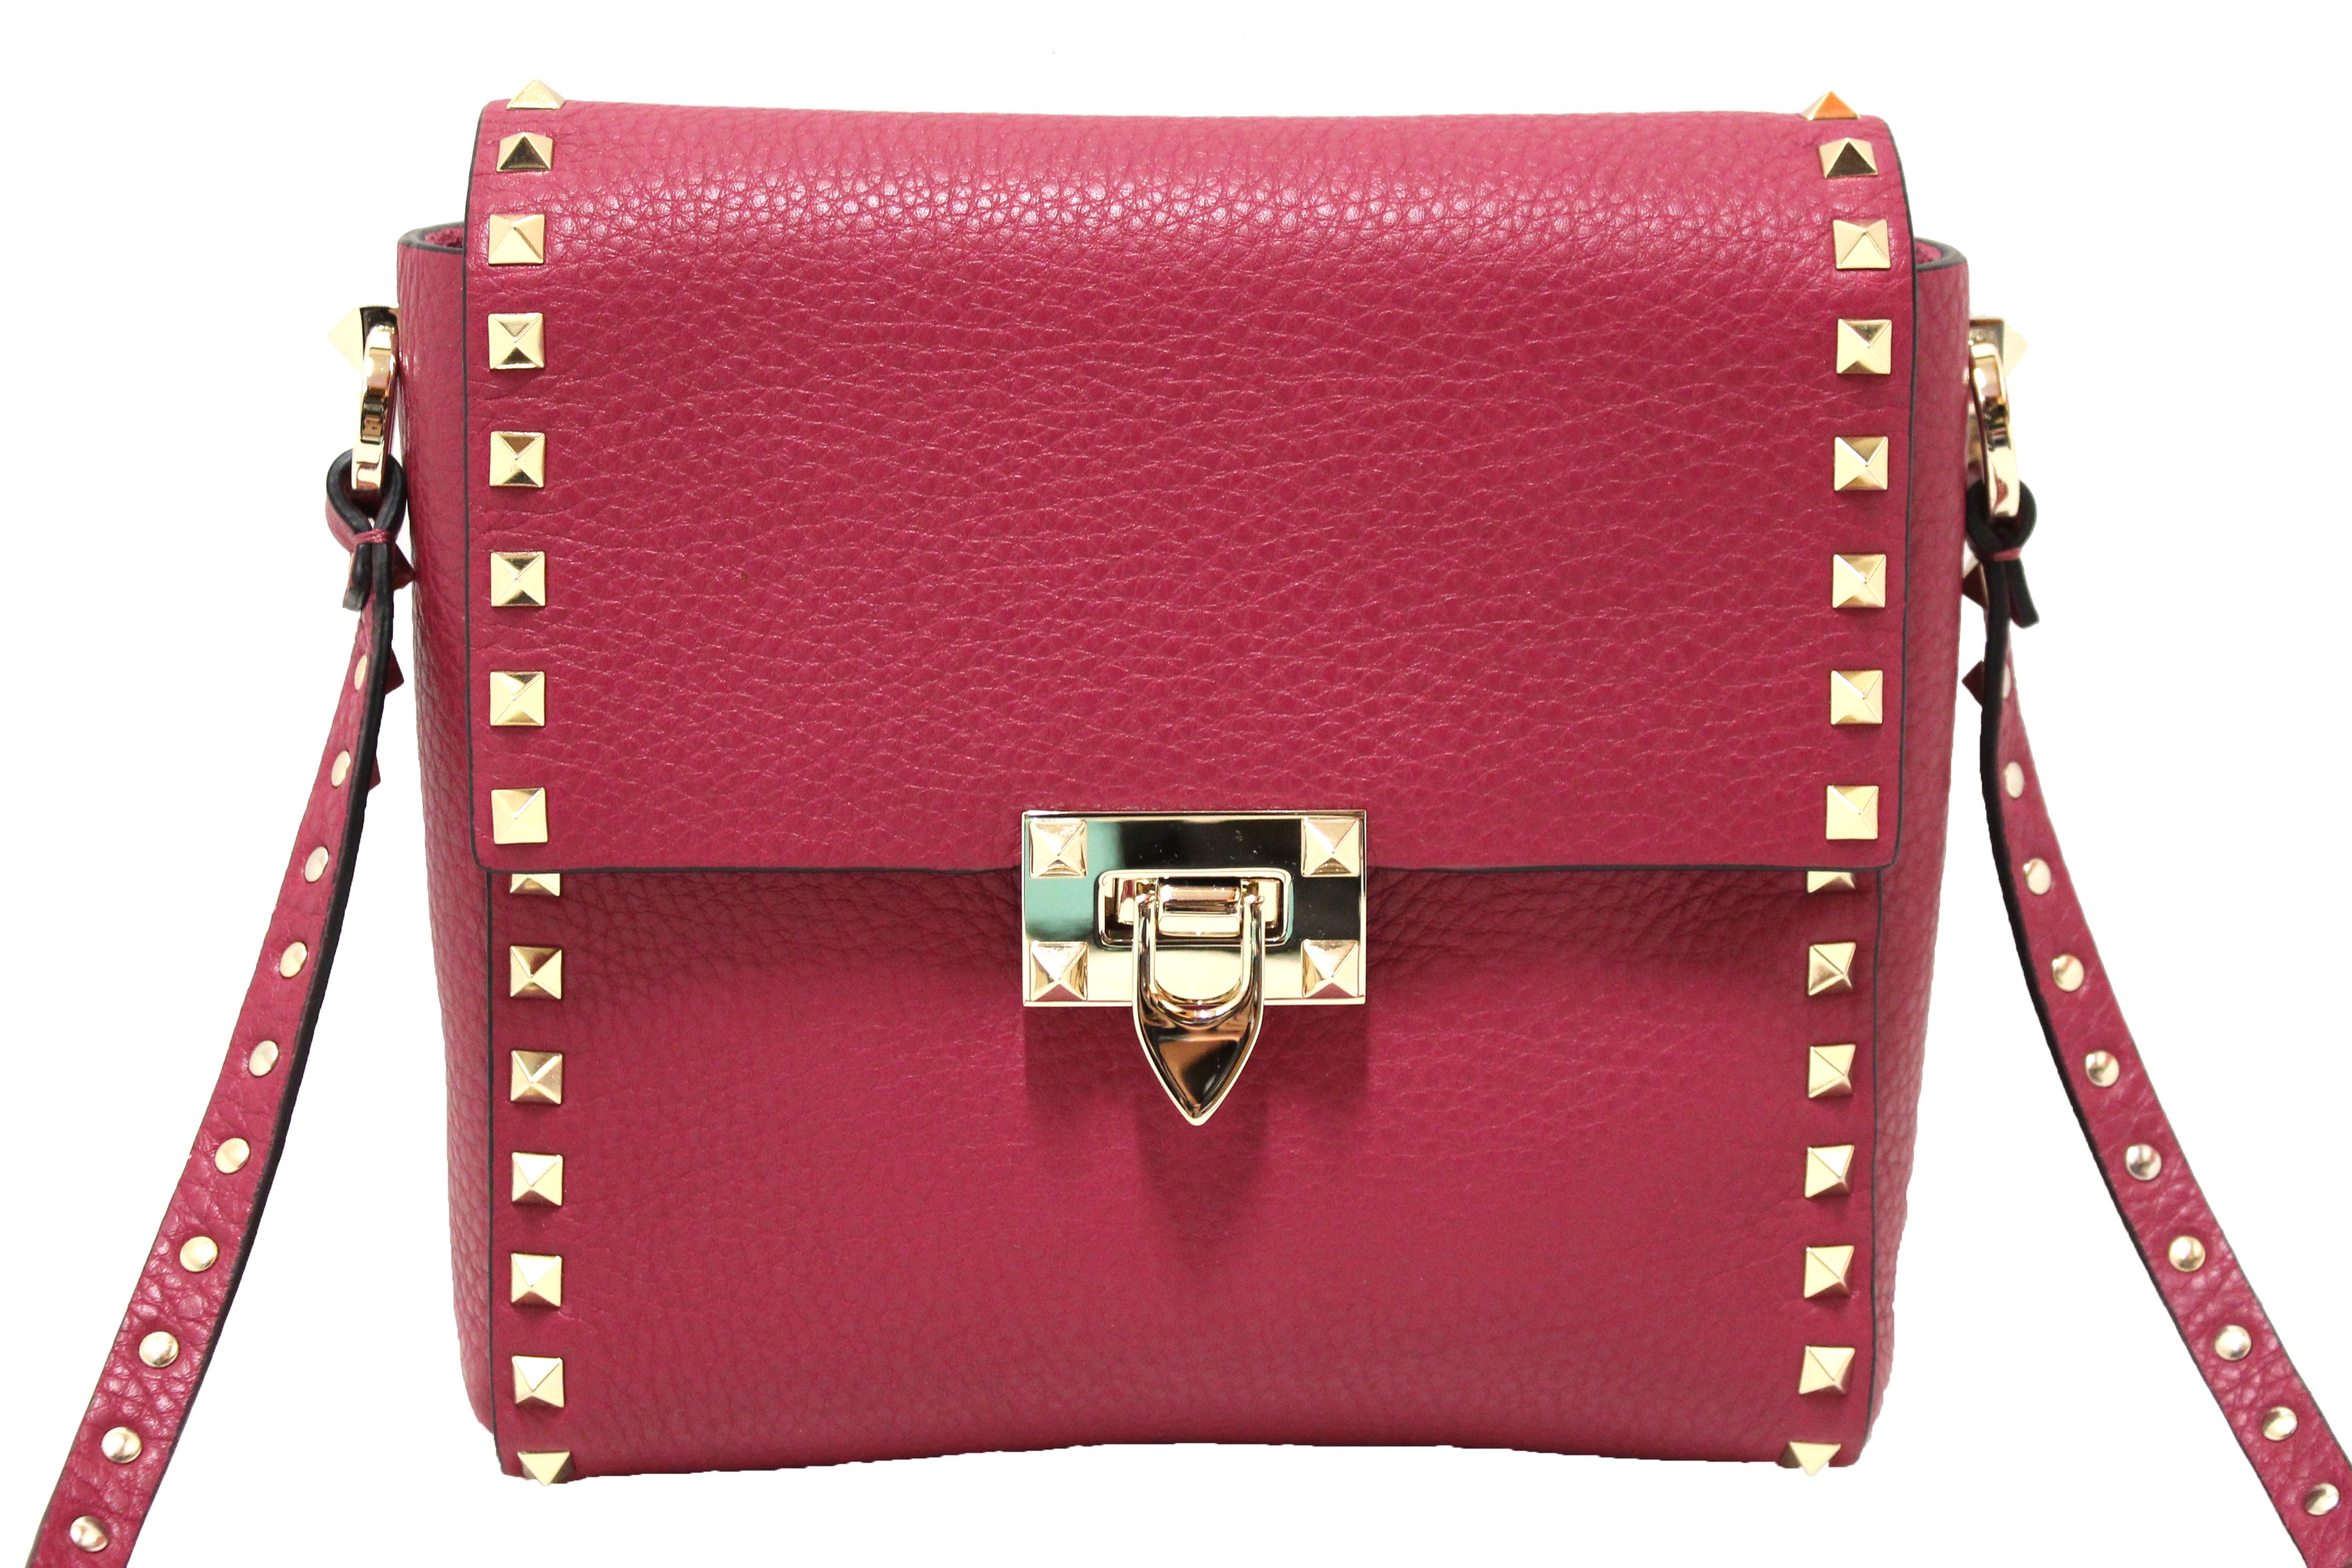 Valentino Garavani - Pink V Logo Flap Shoulder Bag